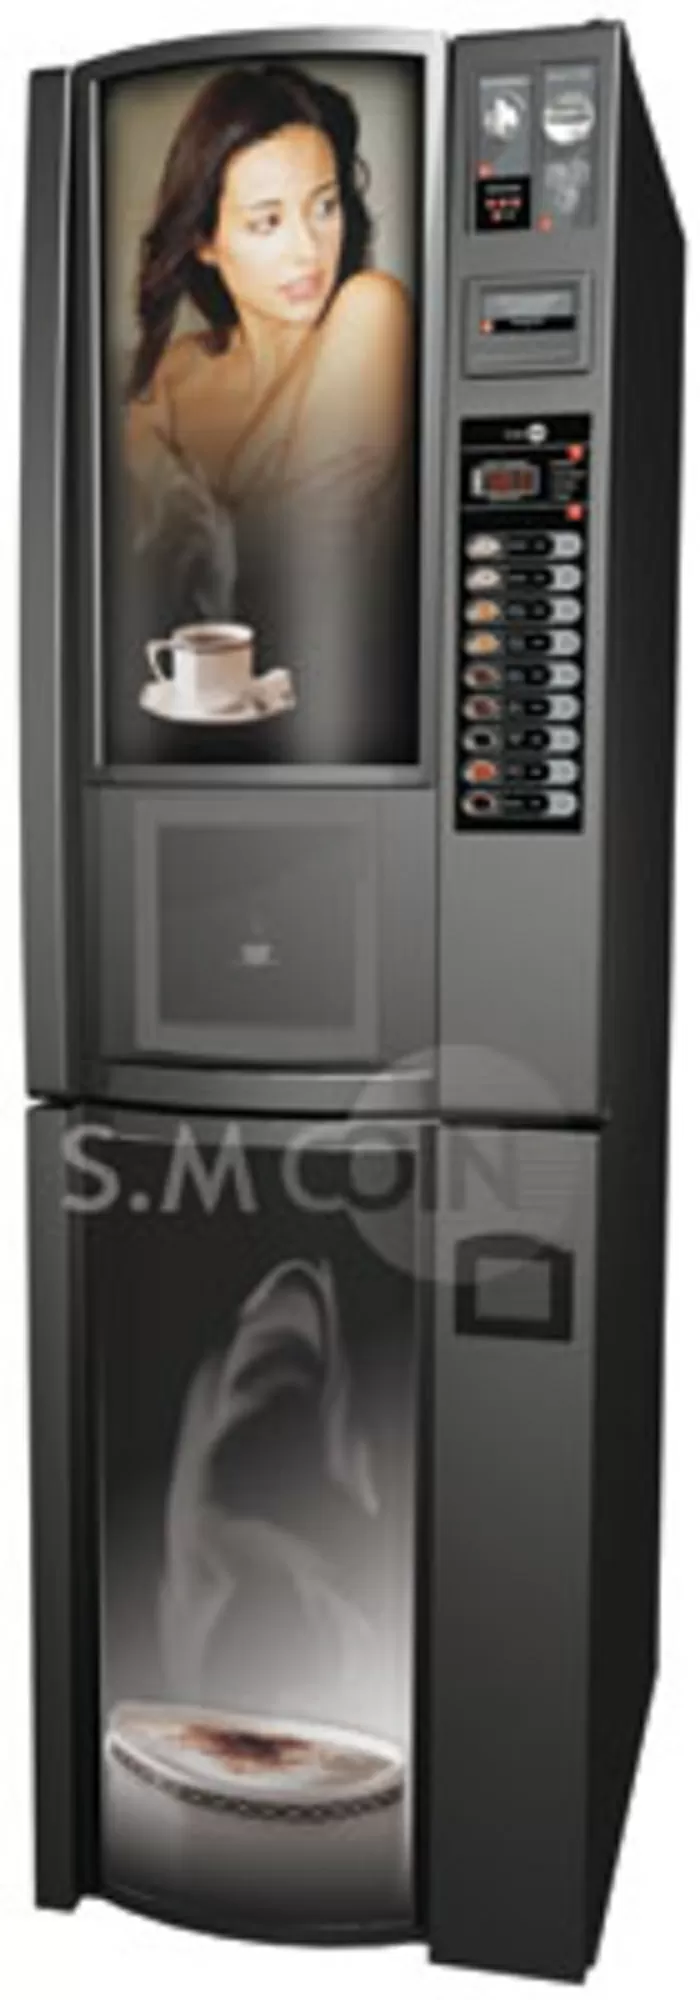 Продам Кофе-автомат S.M Coin VISTA